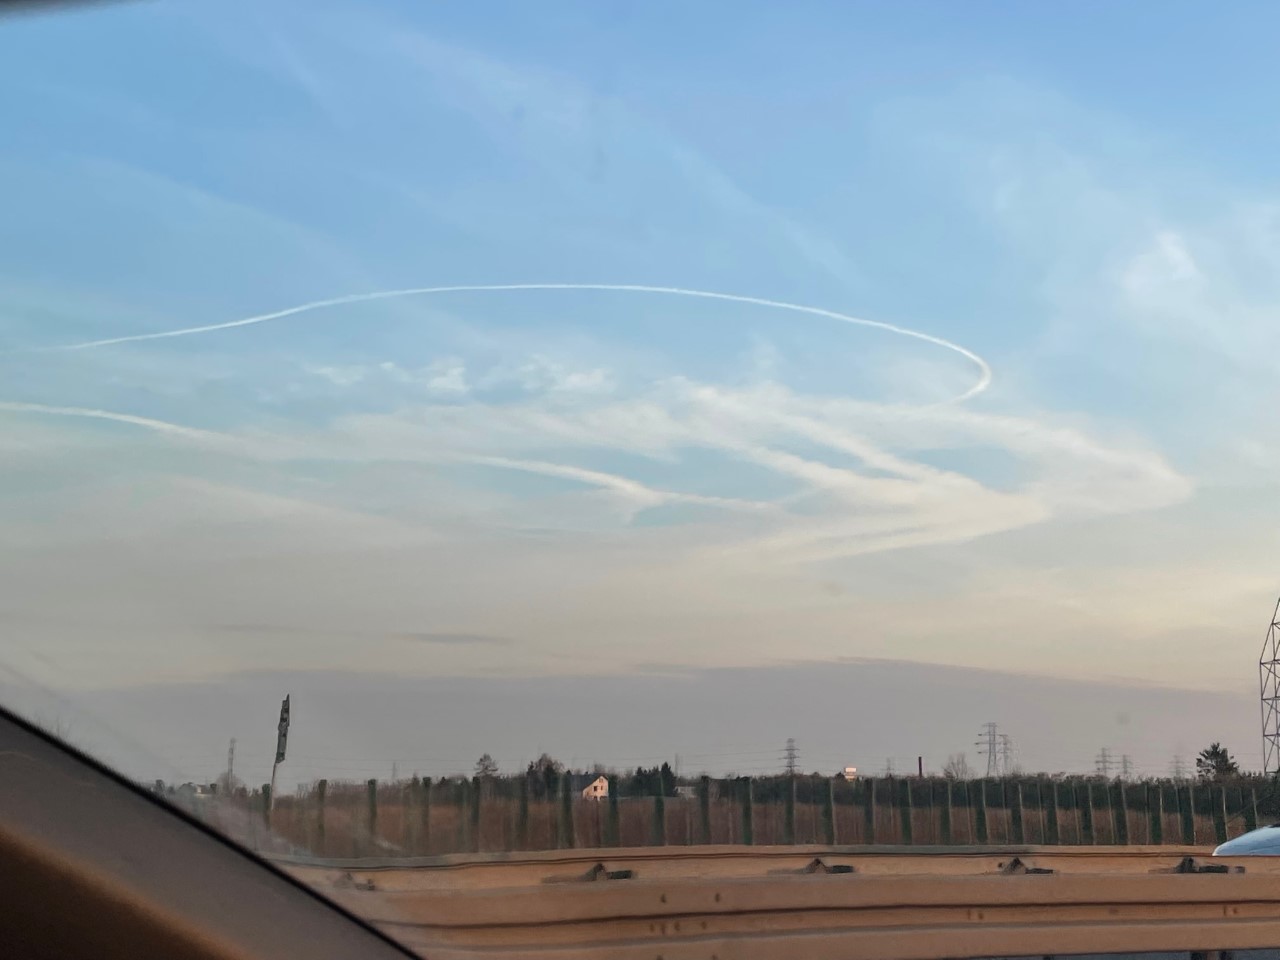 Racetrack pattern contrails against a blue sky